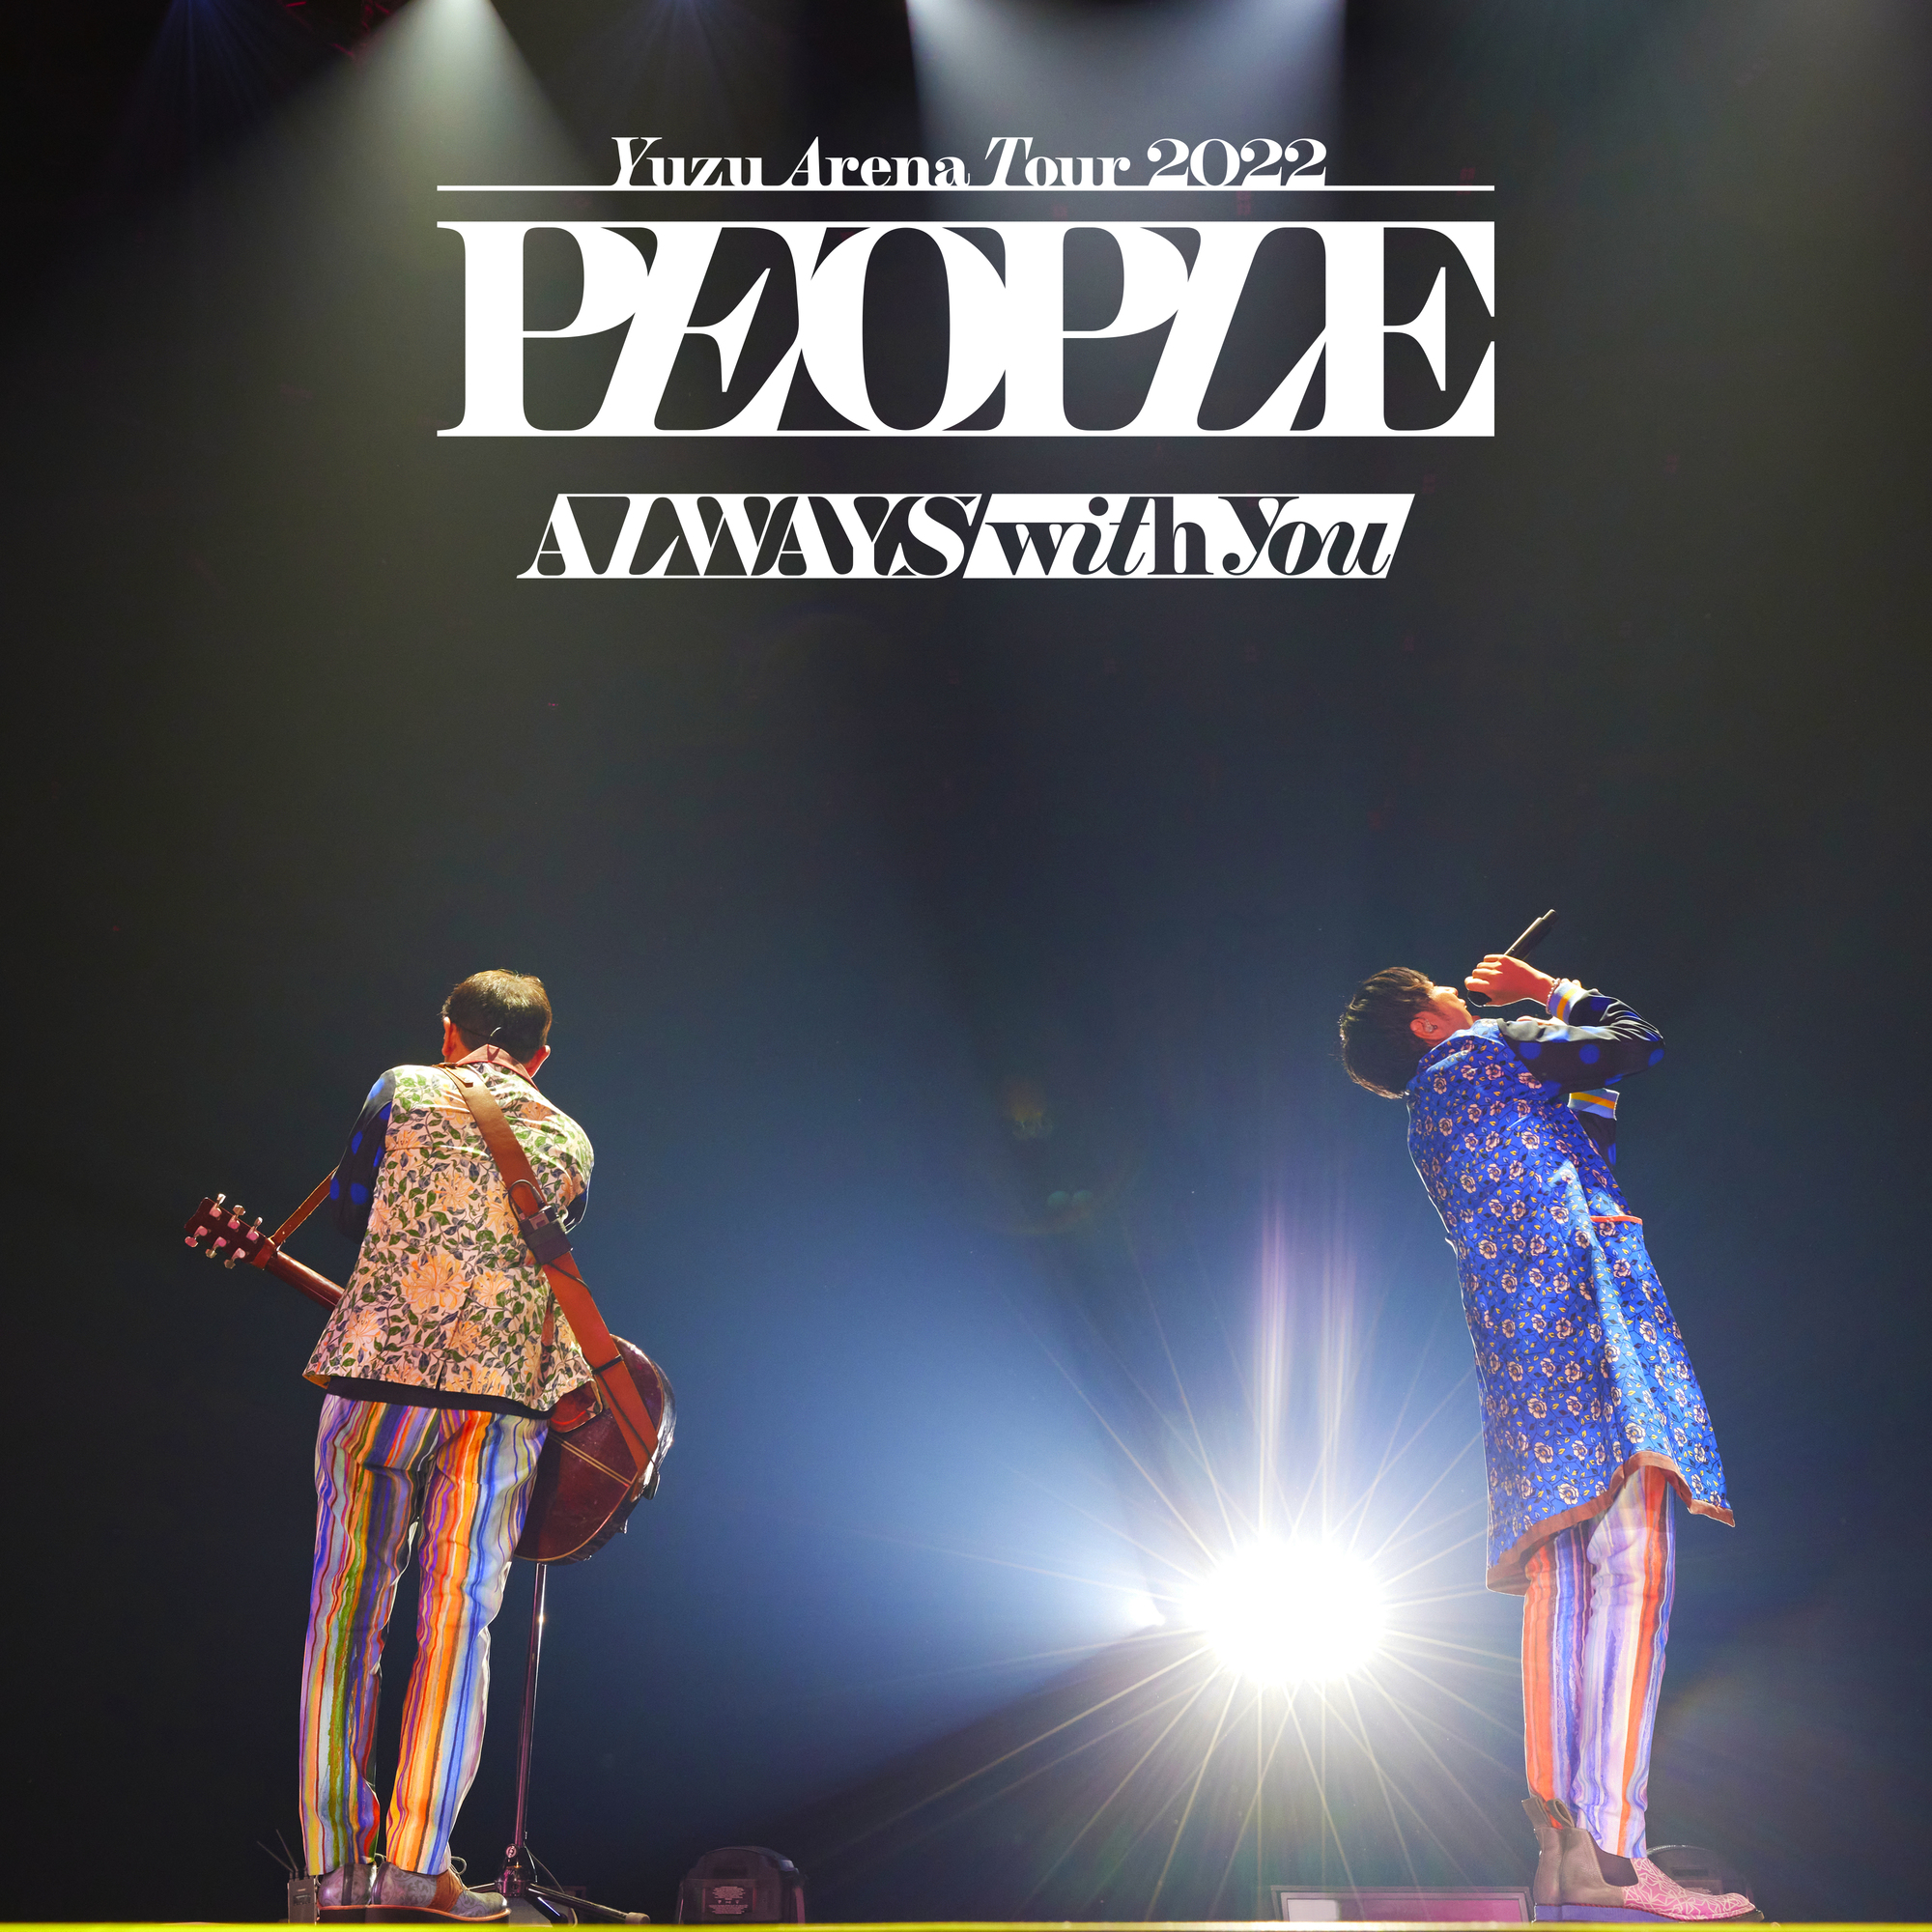 ライブ音源アルバム『YUZU ARENA TOUR 2022 PEOPLE -ALWAYS with you